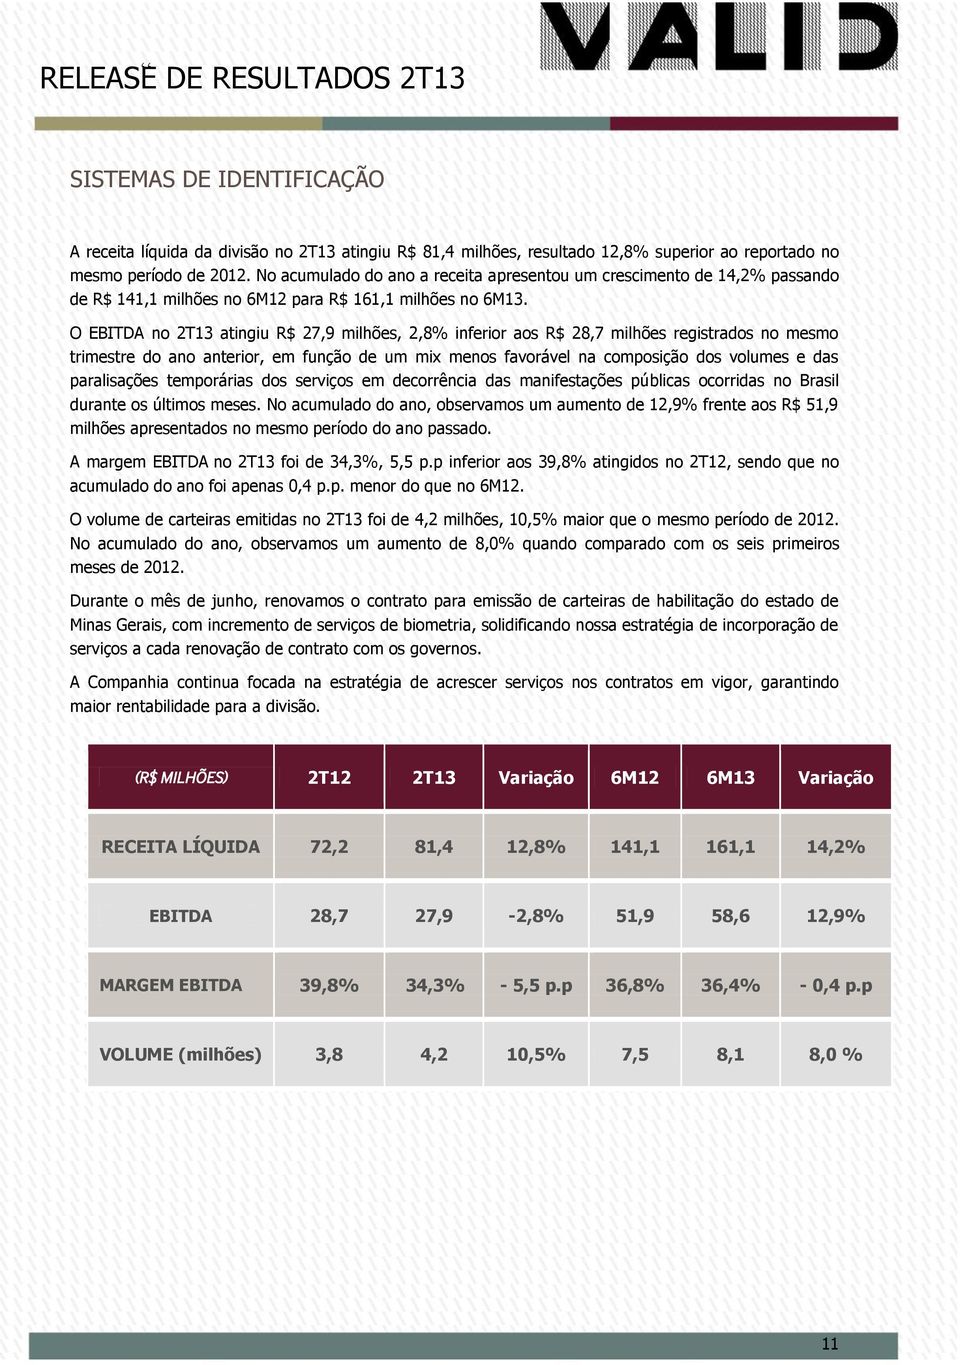 O EBITDA no 2T13 atingiu R$ 27,9 milhões, 2,8% inferior aos R$ 28,7 milhões registrados no mesmo trimestre do ano anterior, em função de um mix menos favorável na composição dos volumes e das